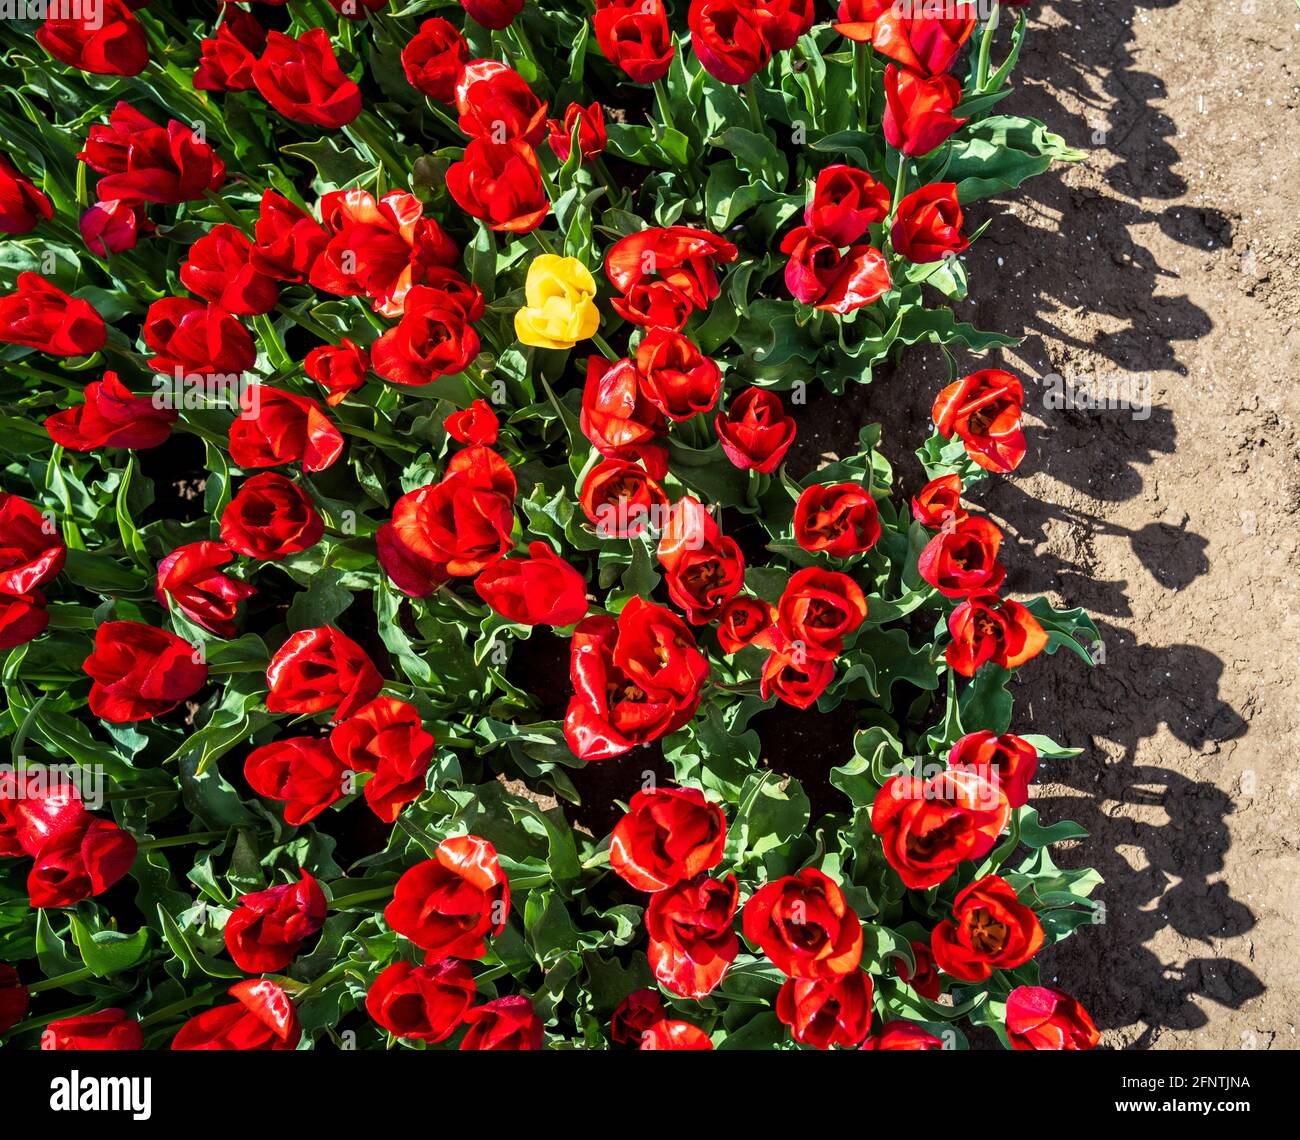 Tulipano giallo circondato da tulipani rossi - essere diverso Foto Stock